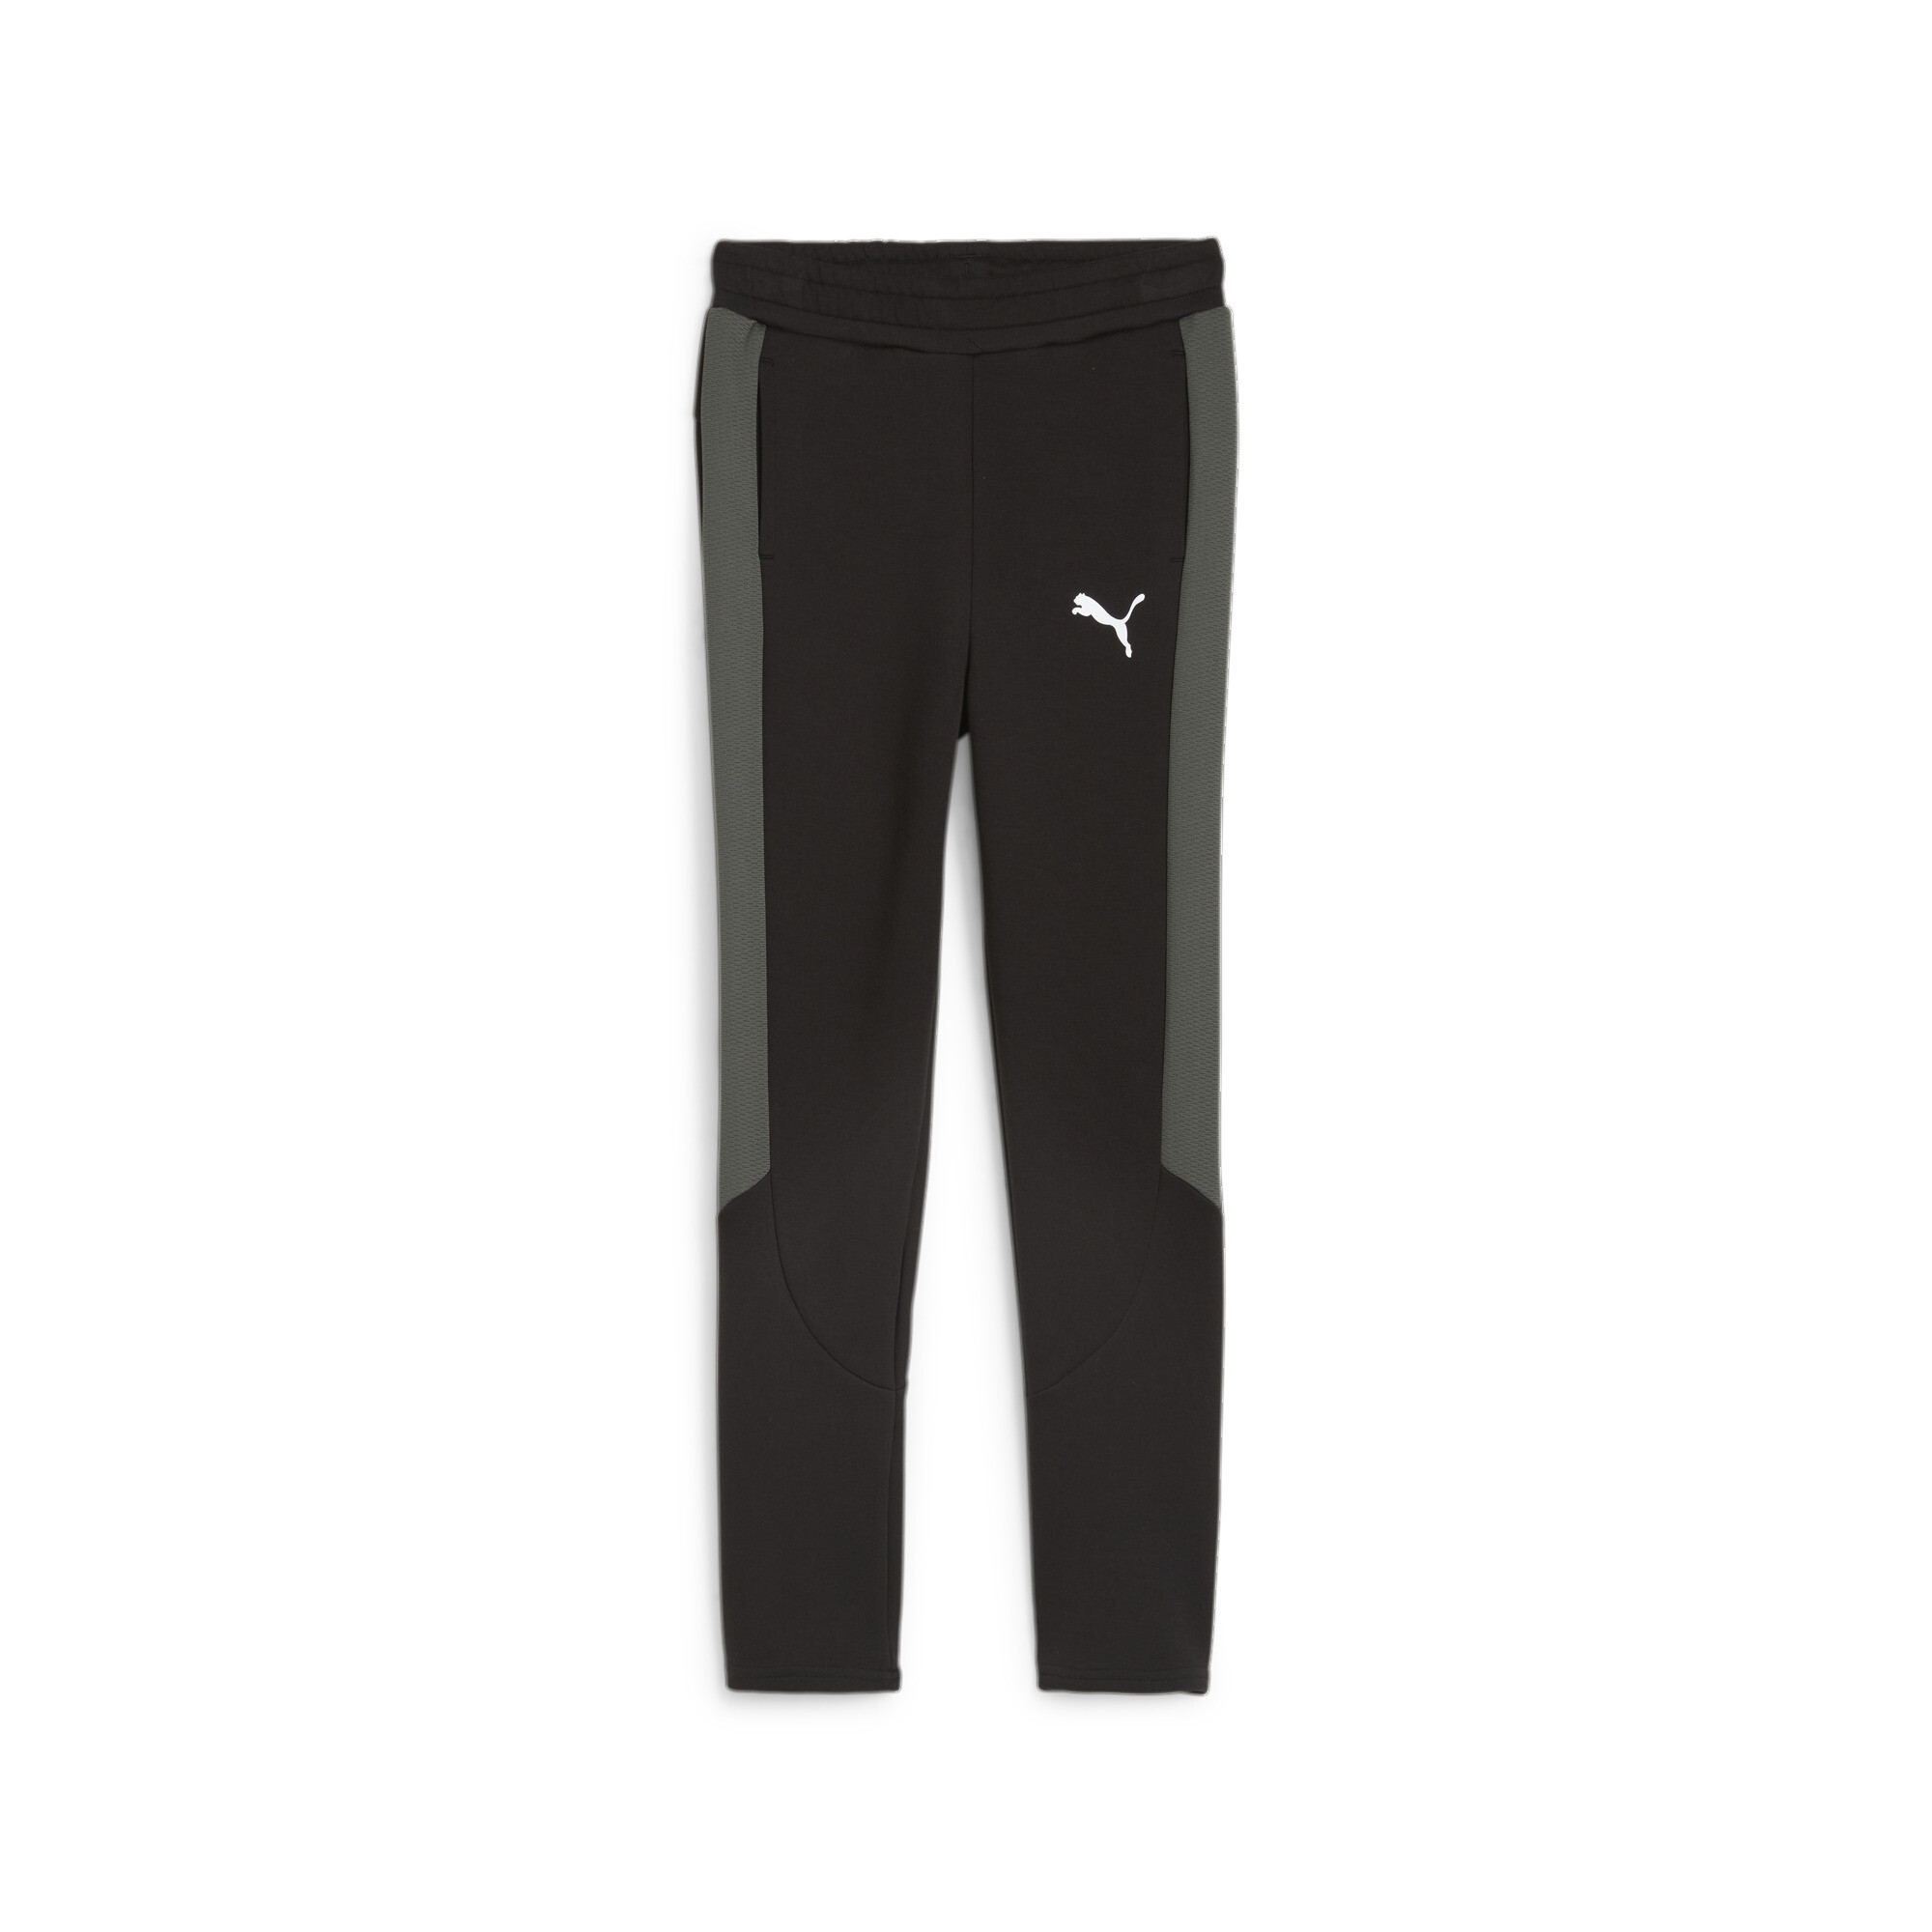 PUMA EVOSTRIPE Sweatpants In Black, Size 15-16 Youth